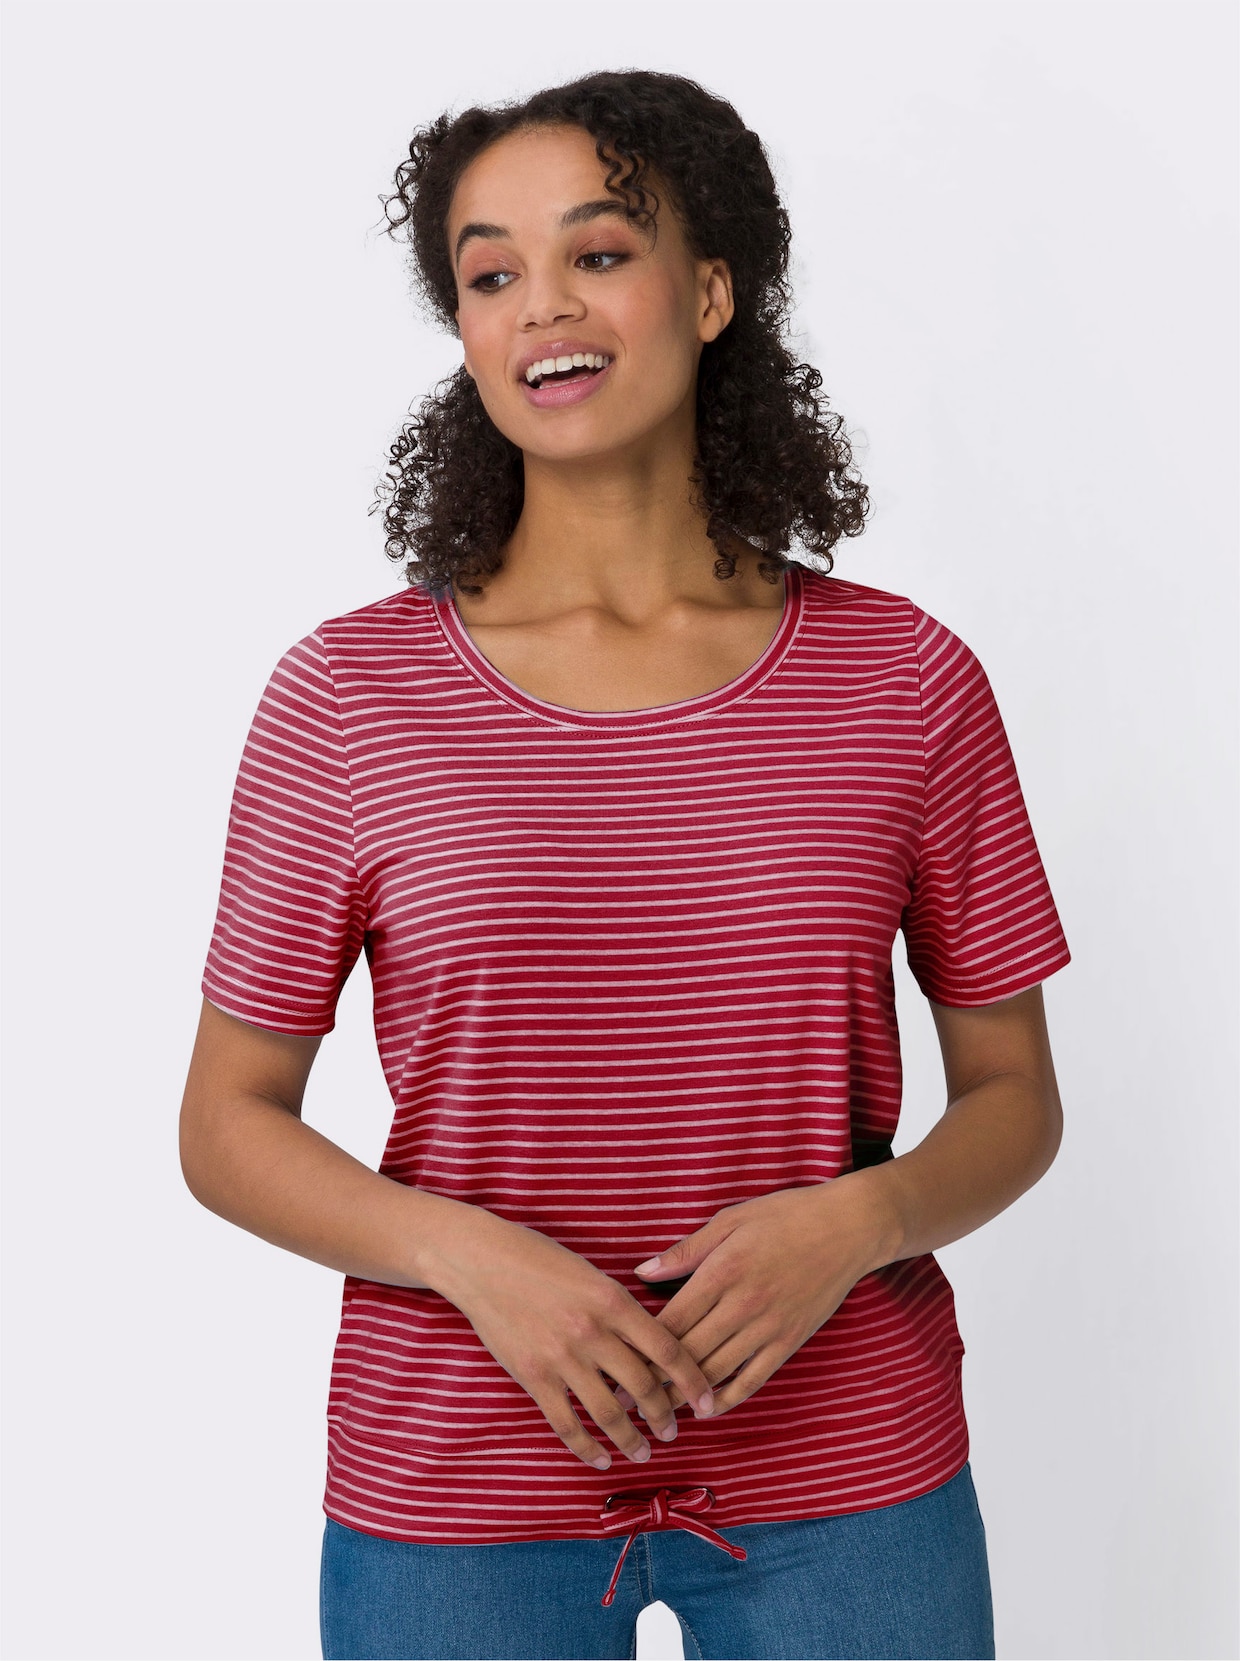 Tričko s krátkým rukávem - červená-bílá-proužek